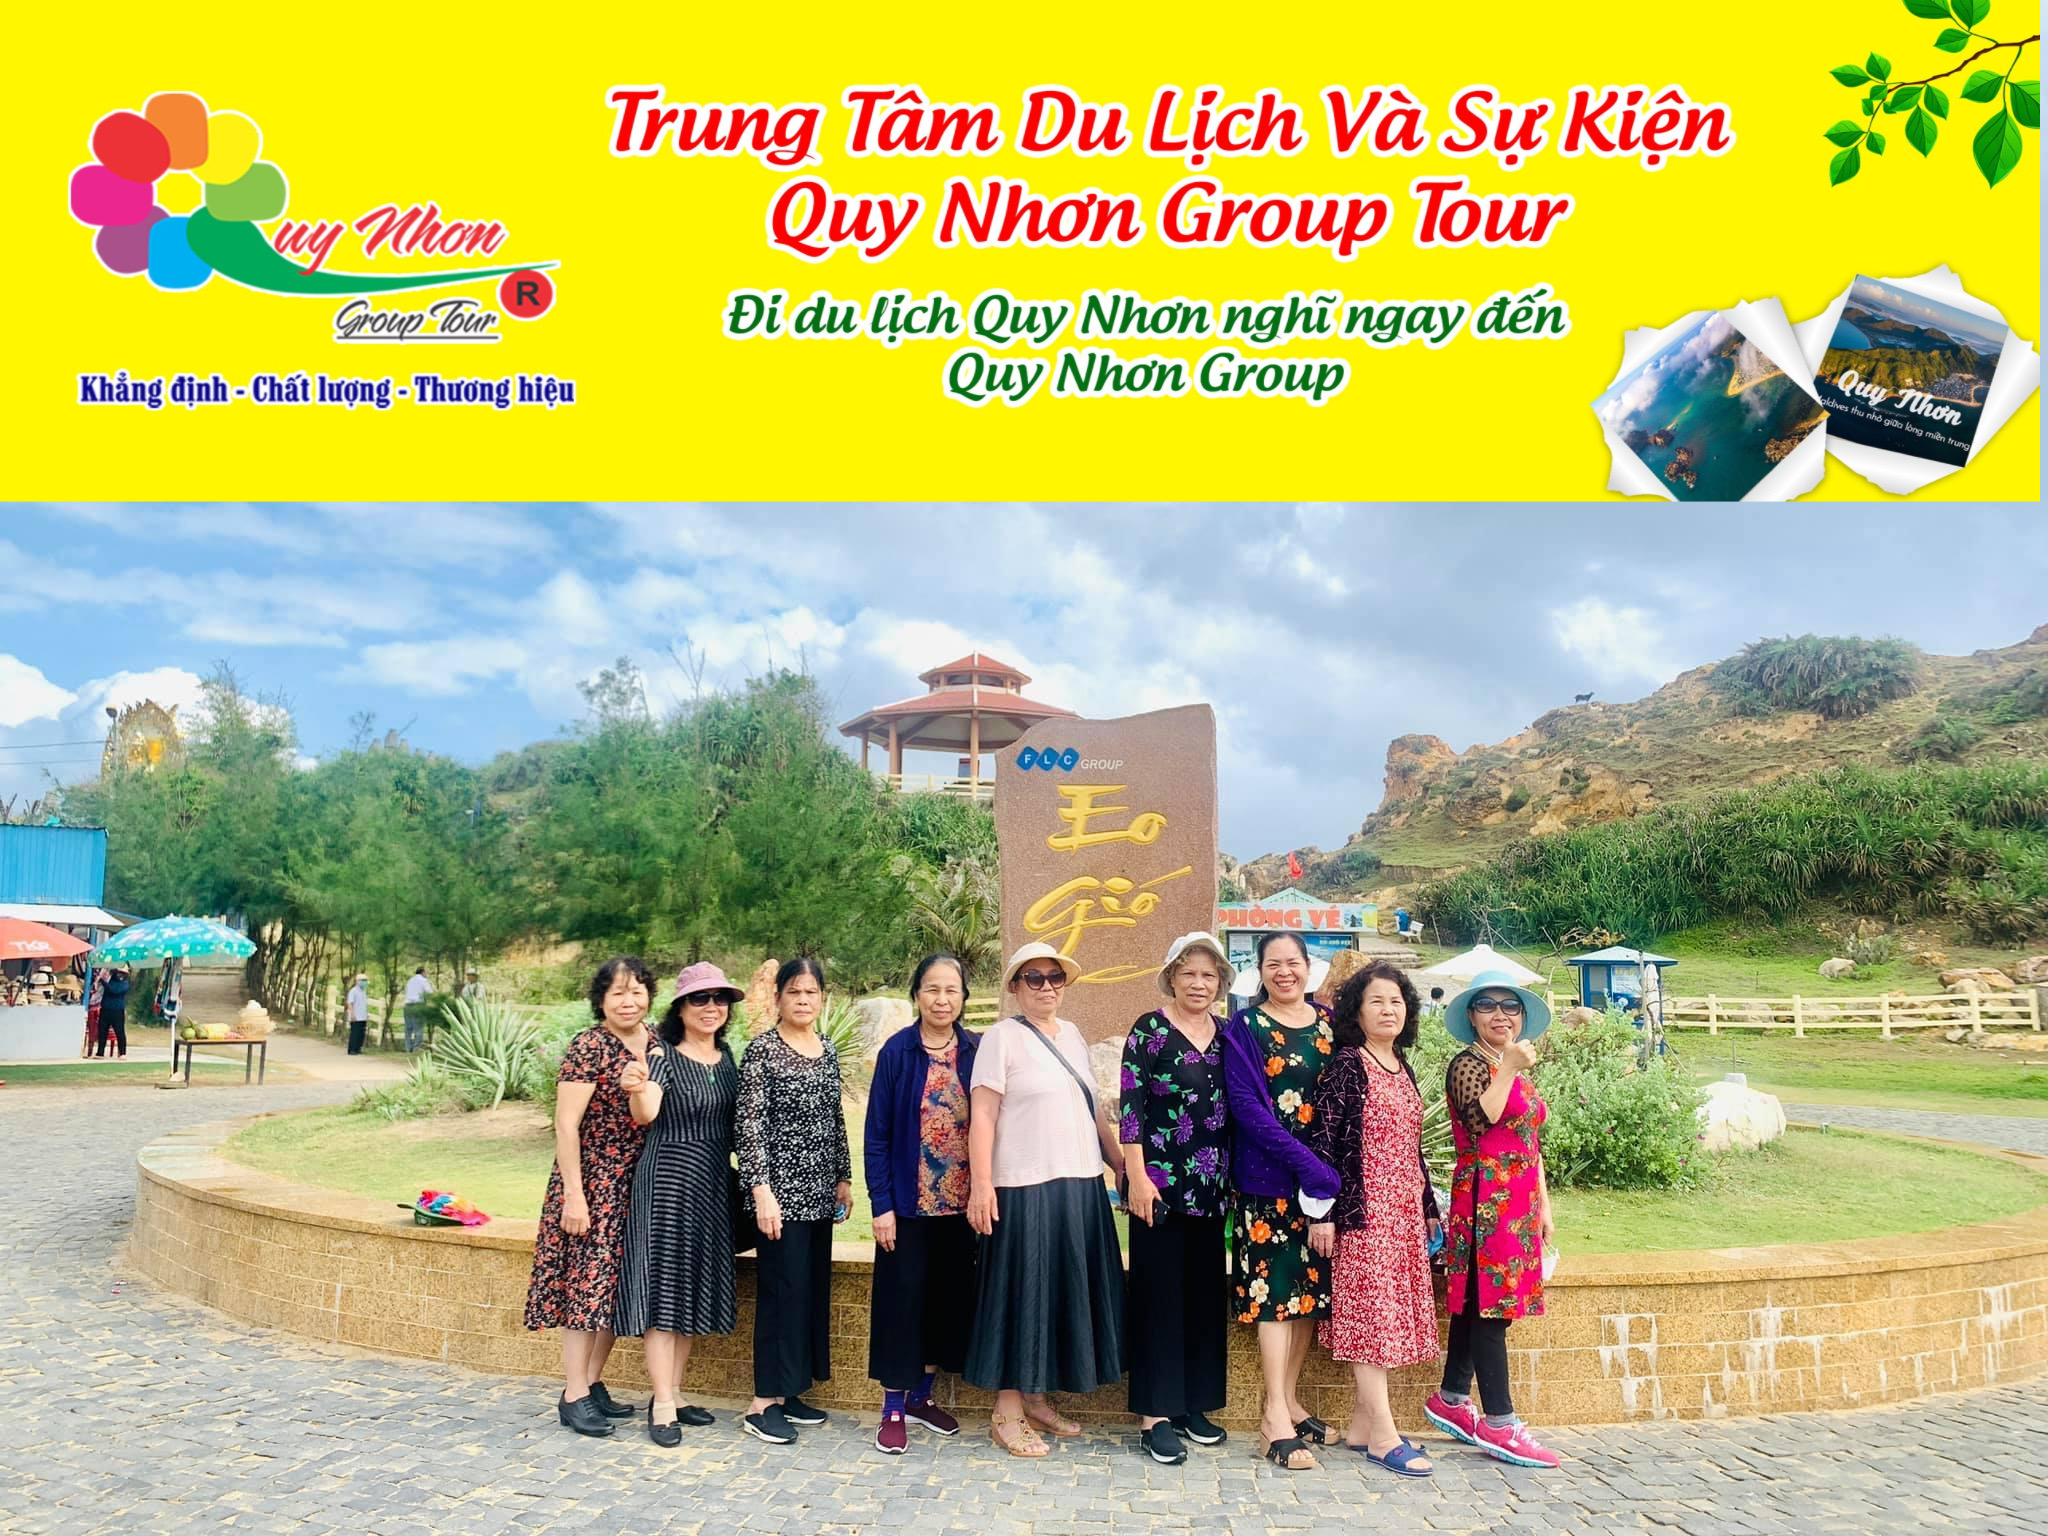 TOUR KỲ CO HÒN KHÔ.Tell (0944.107174)- Tour Sang Trọng – Đẳng Cấp – Chất Lượng